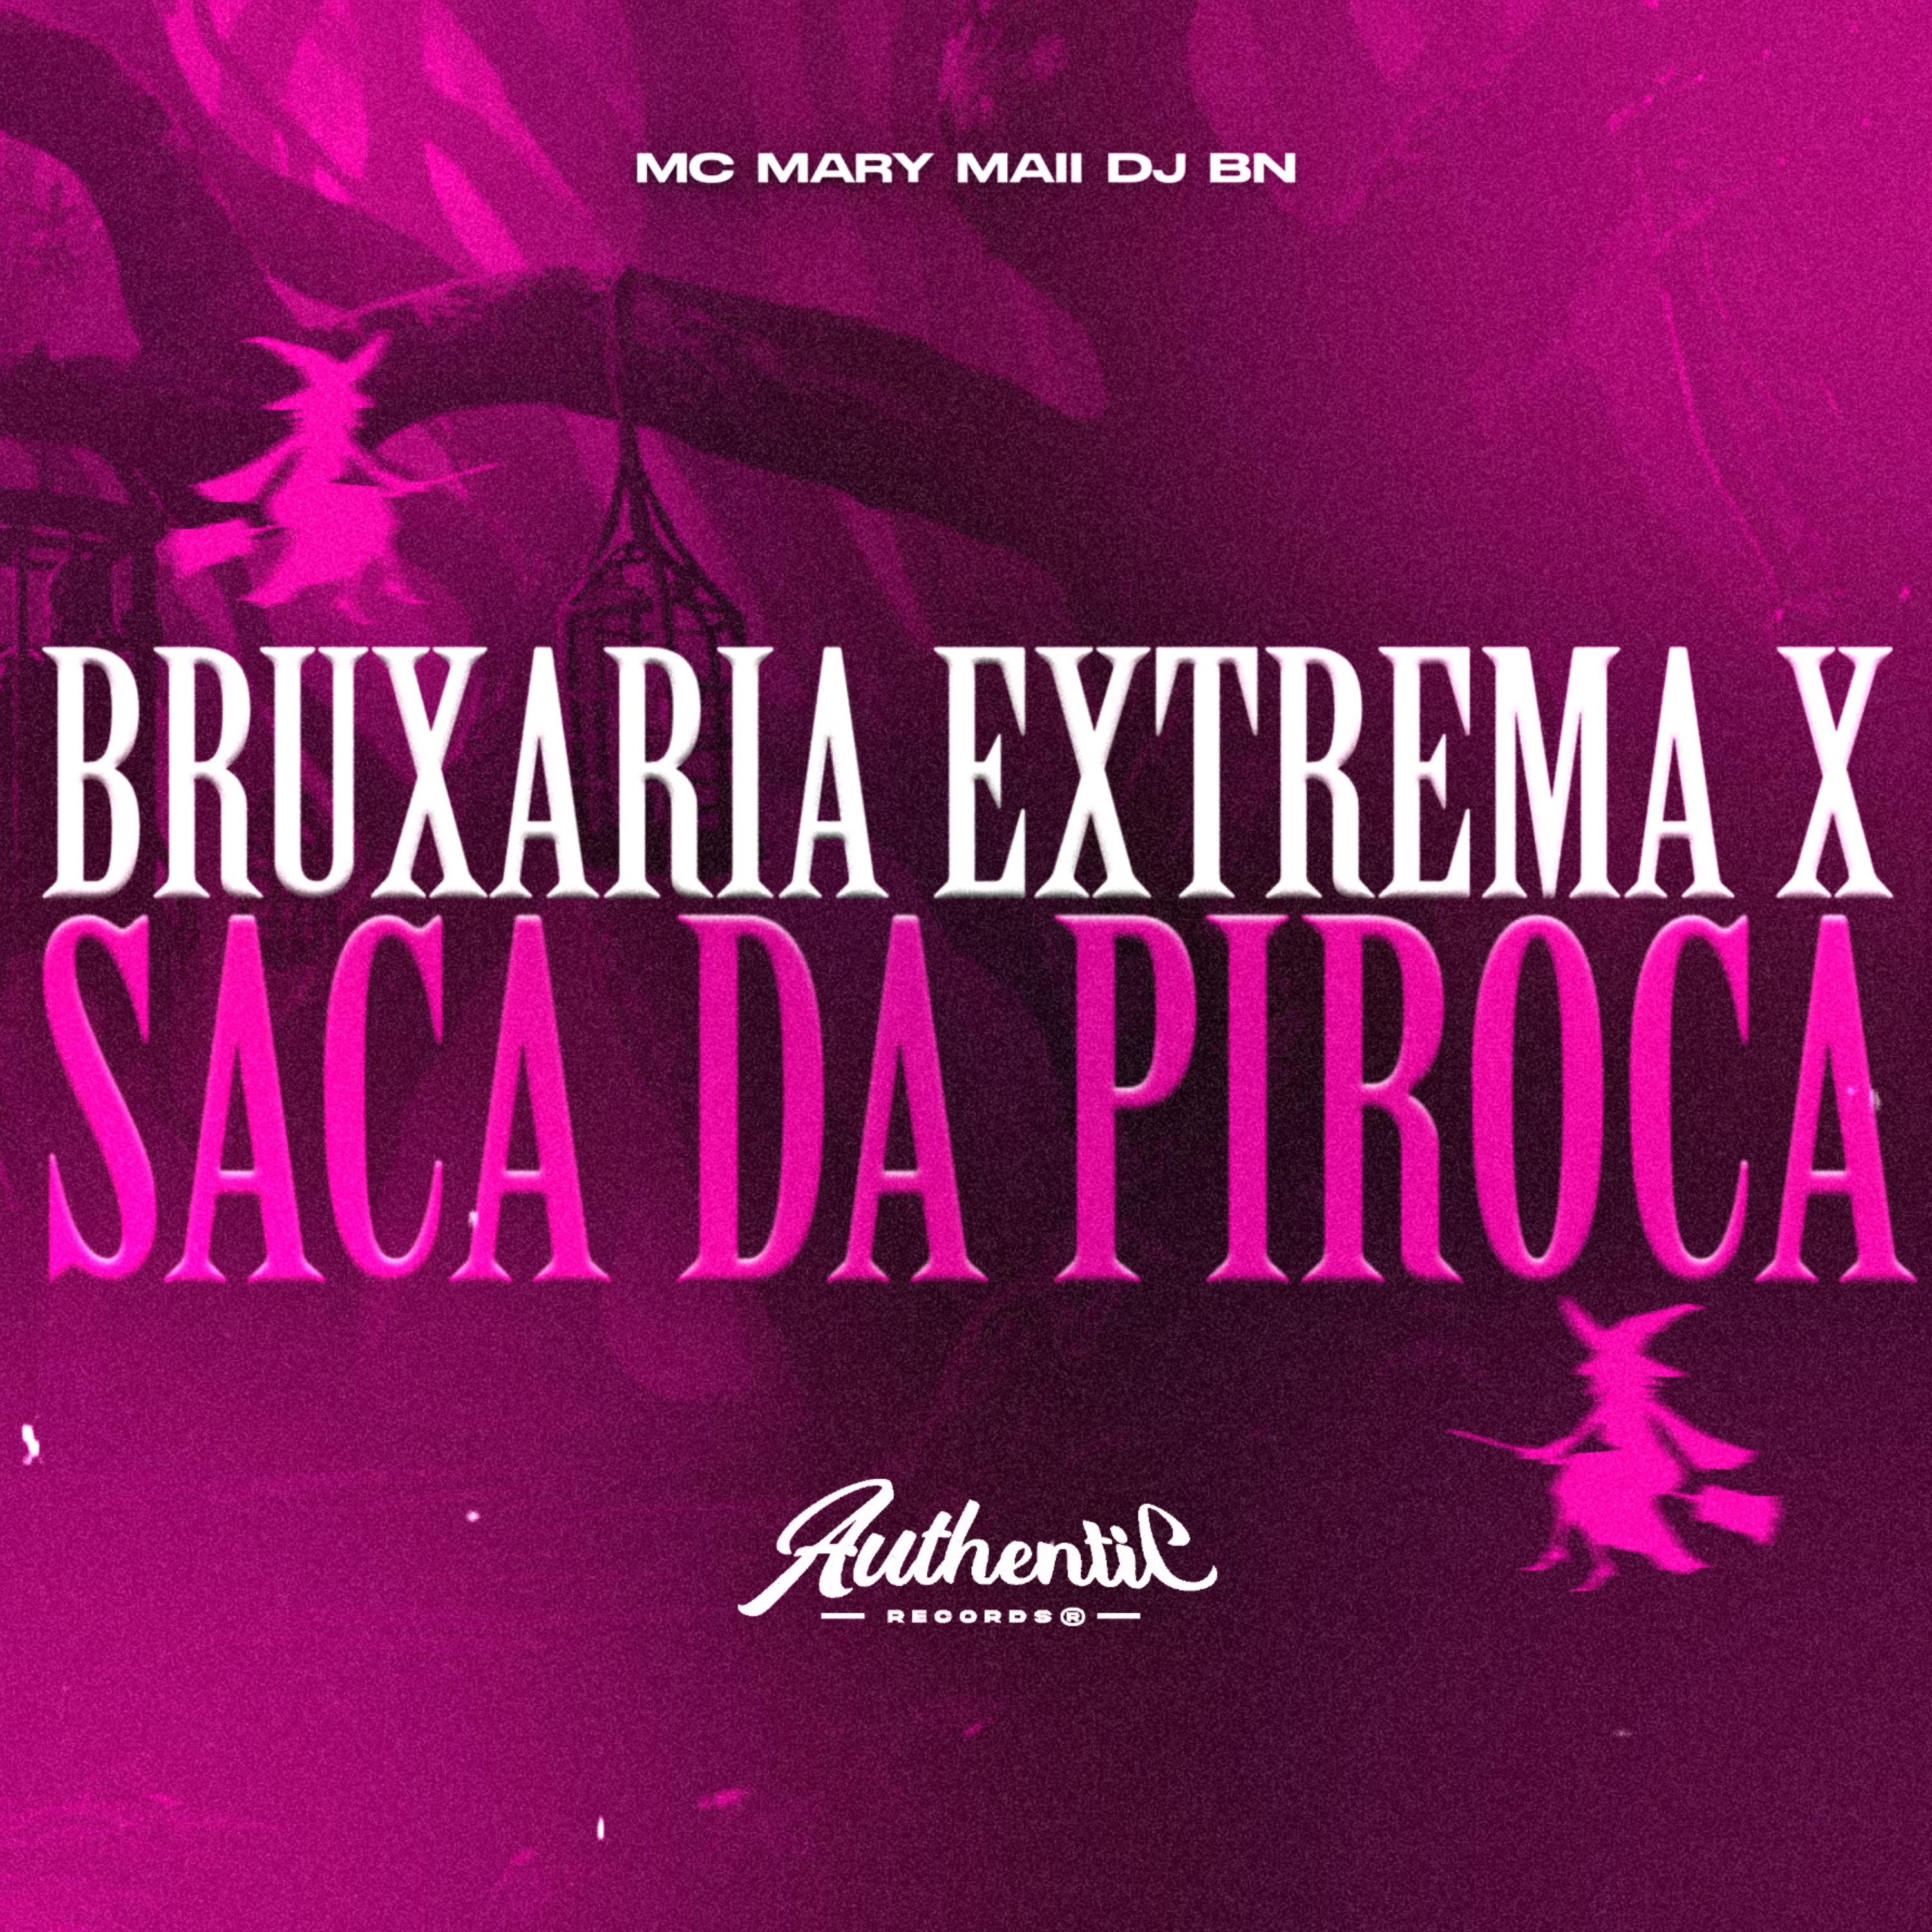 DJ BN - Bruxaria Extrema X Saca da Piroca